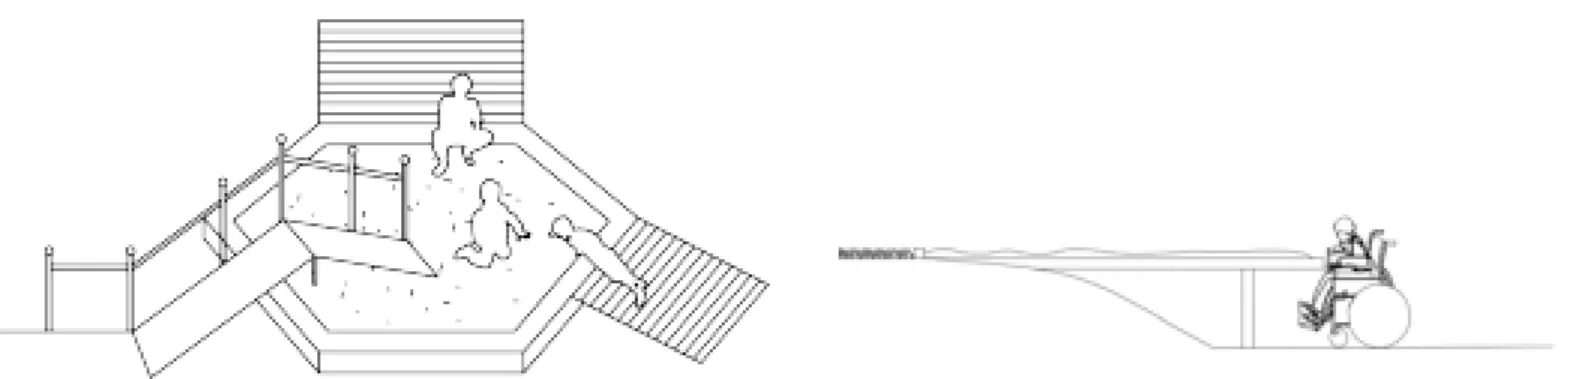 Figur 8-9: Visar hur en traditionell sandlåda kan tillgängliggöras för barn med nedsatt  funktionsnedsättning